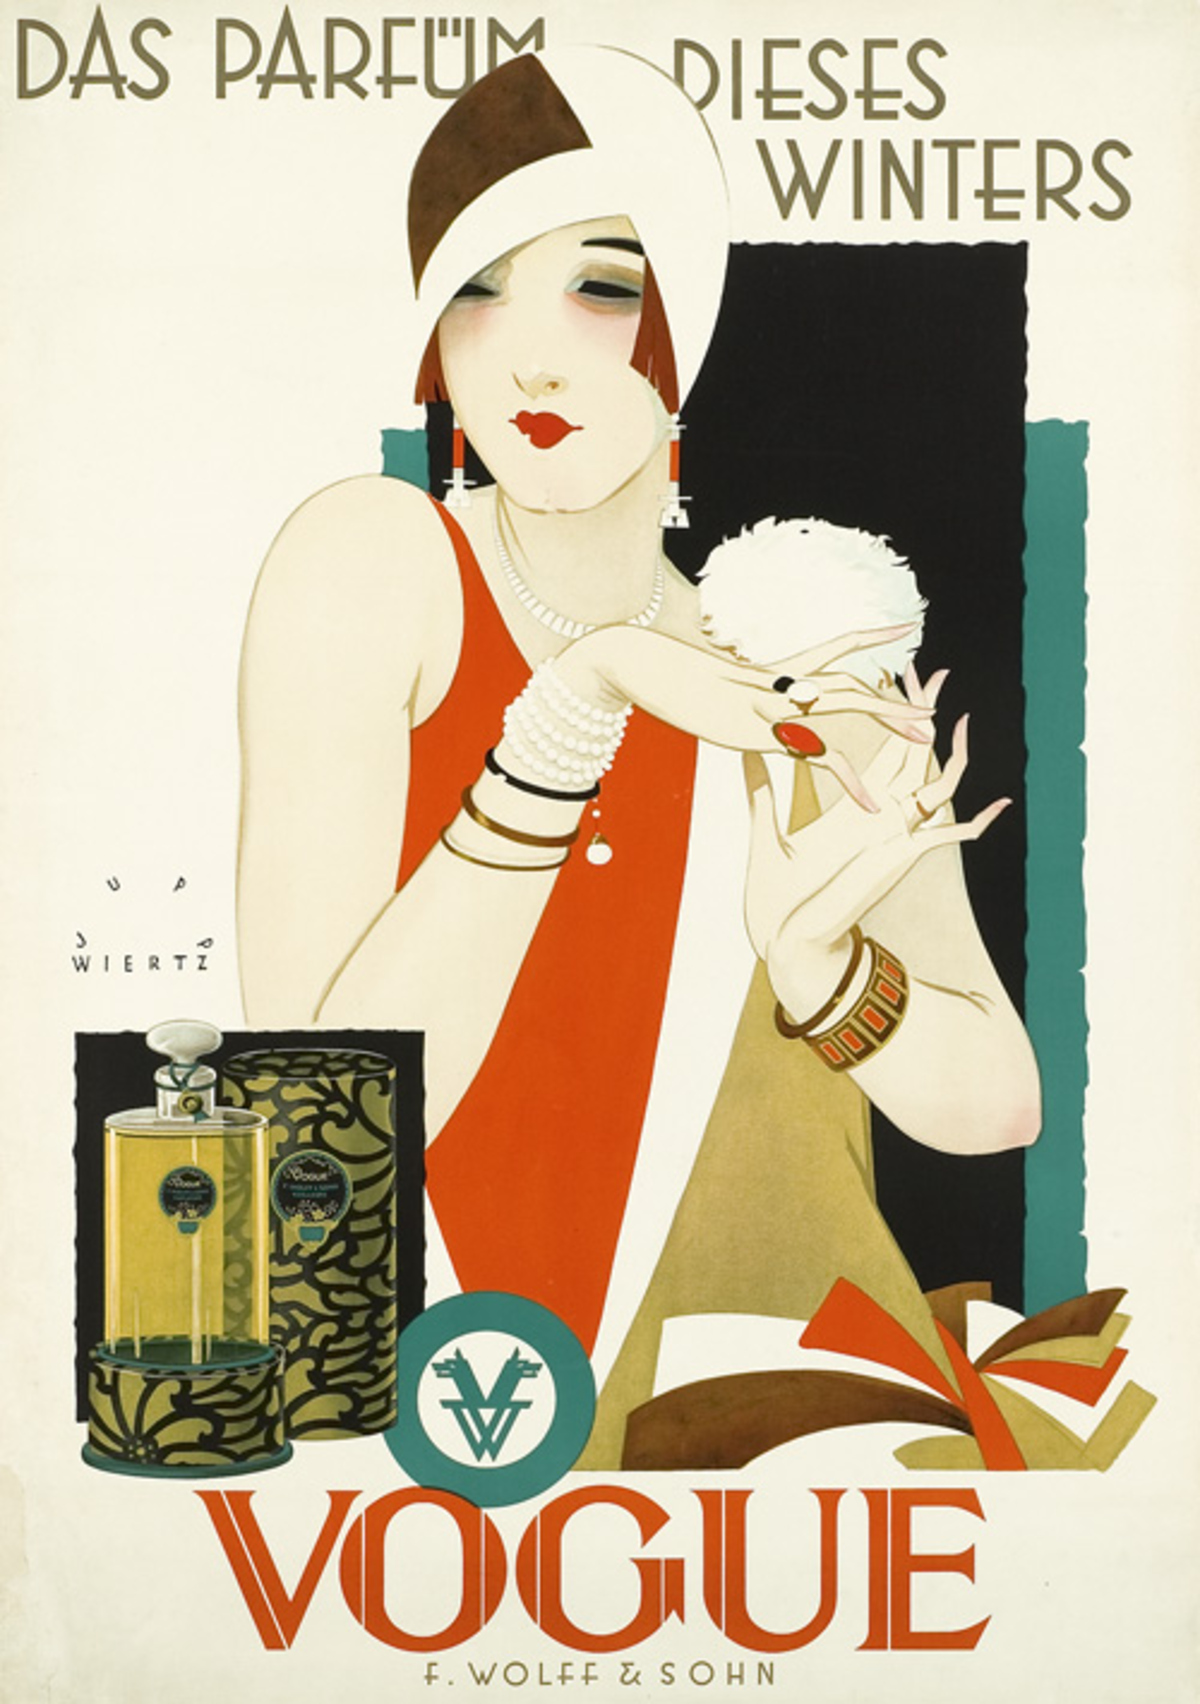 Plakatwerbung von 1926/27